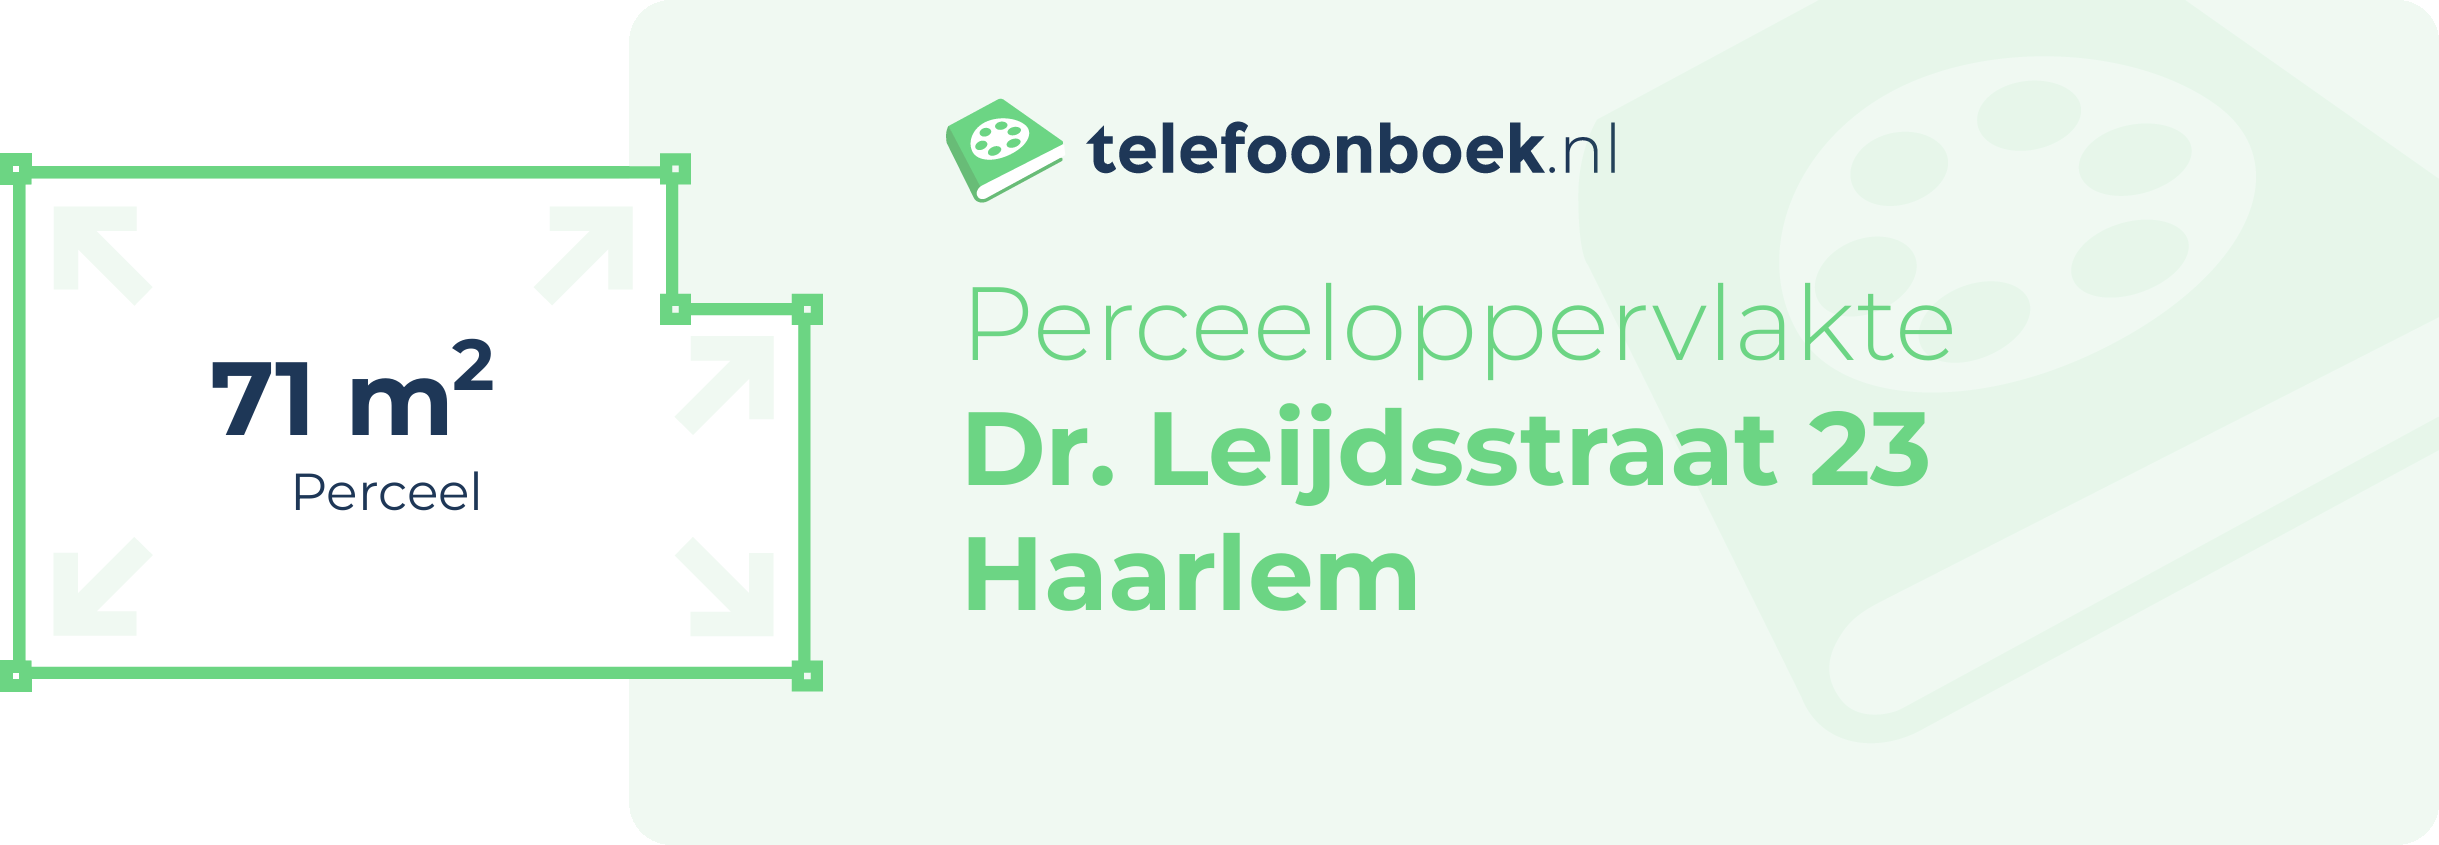 Perceeloppervlakte Dr. Leijdsstraat 23 Haarlem